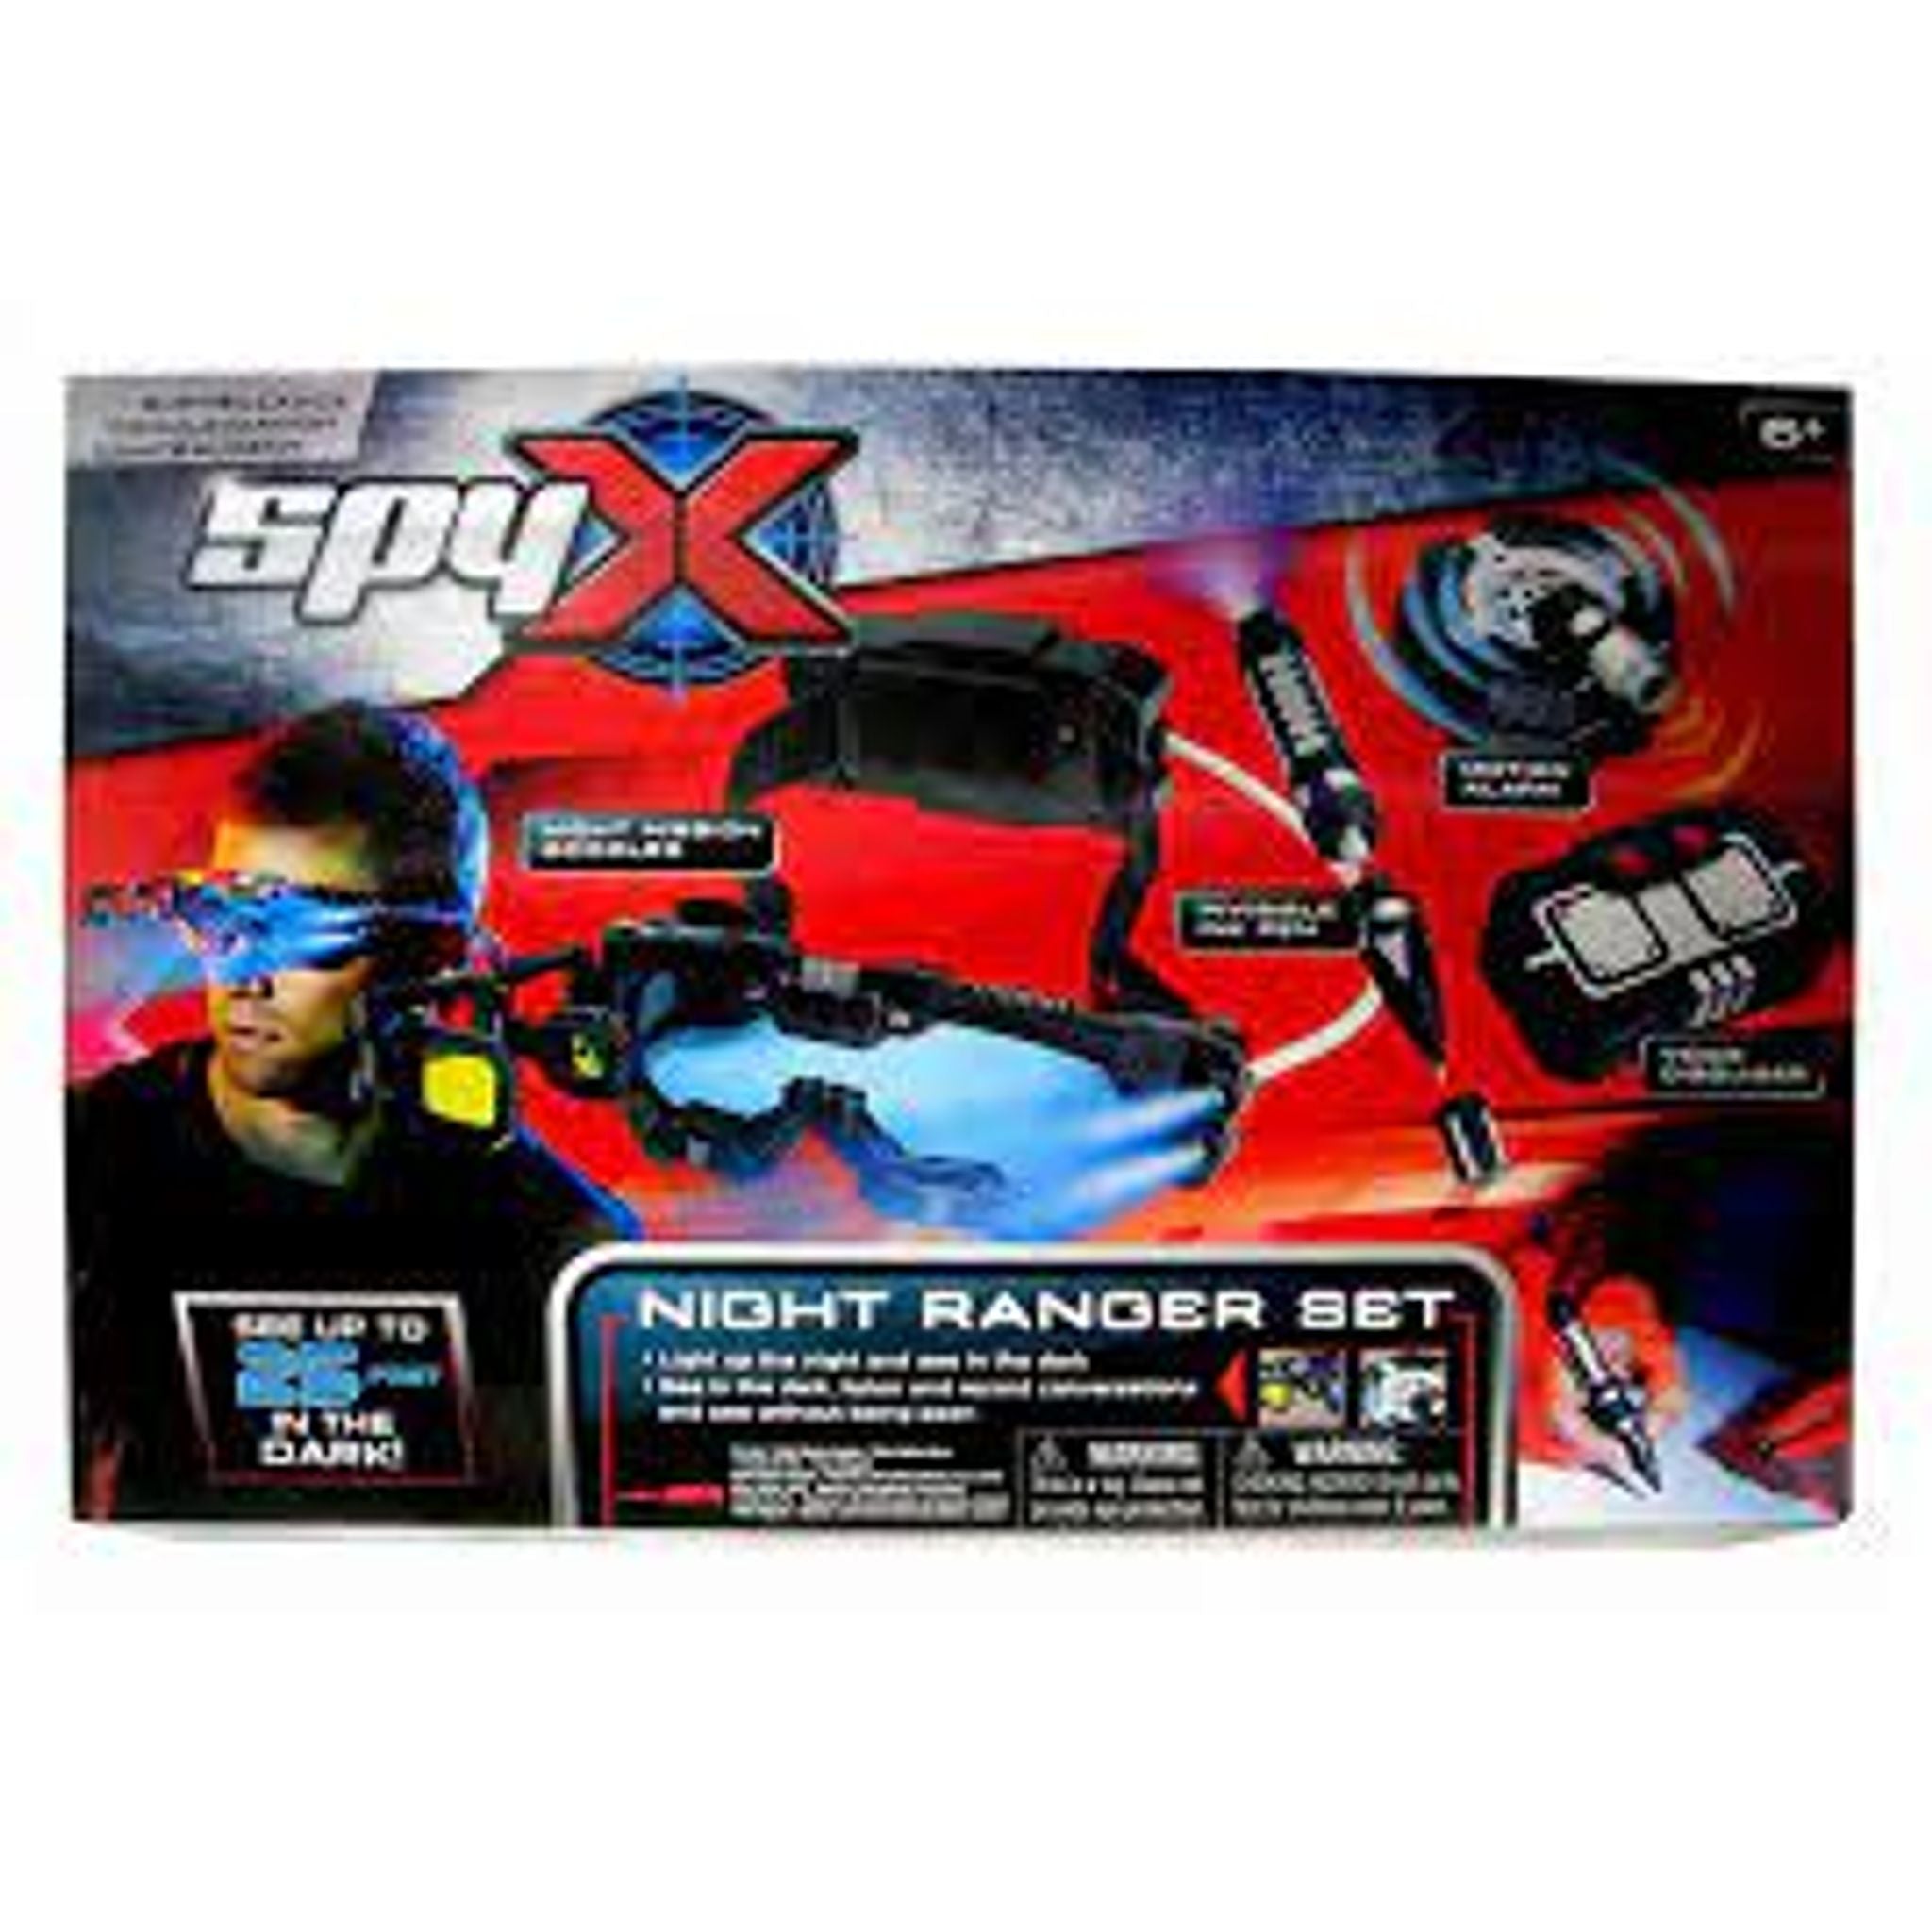 SpyX Night Ranger Set - Toybox Tales